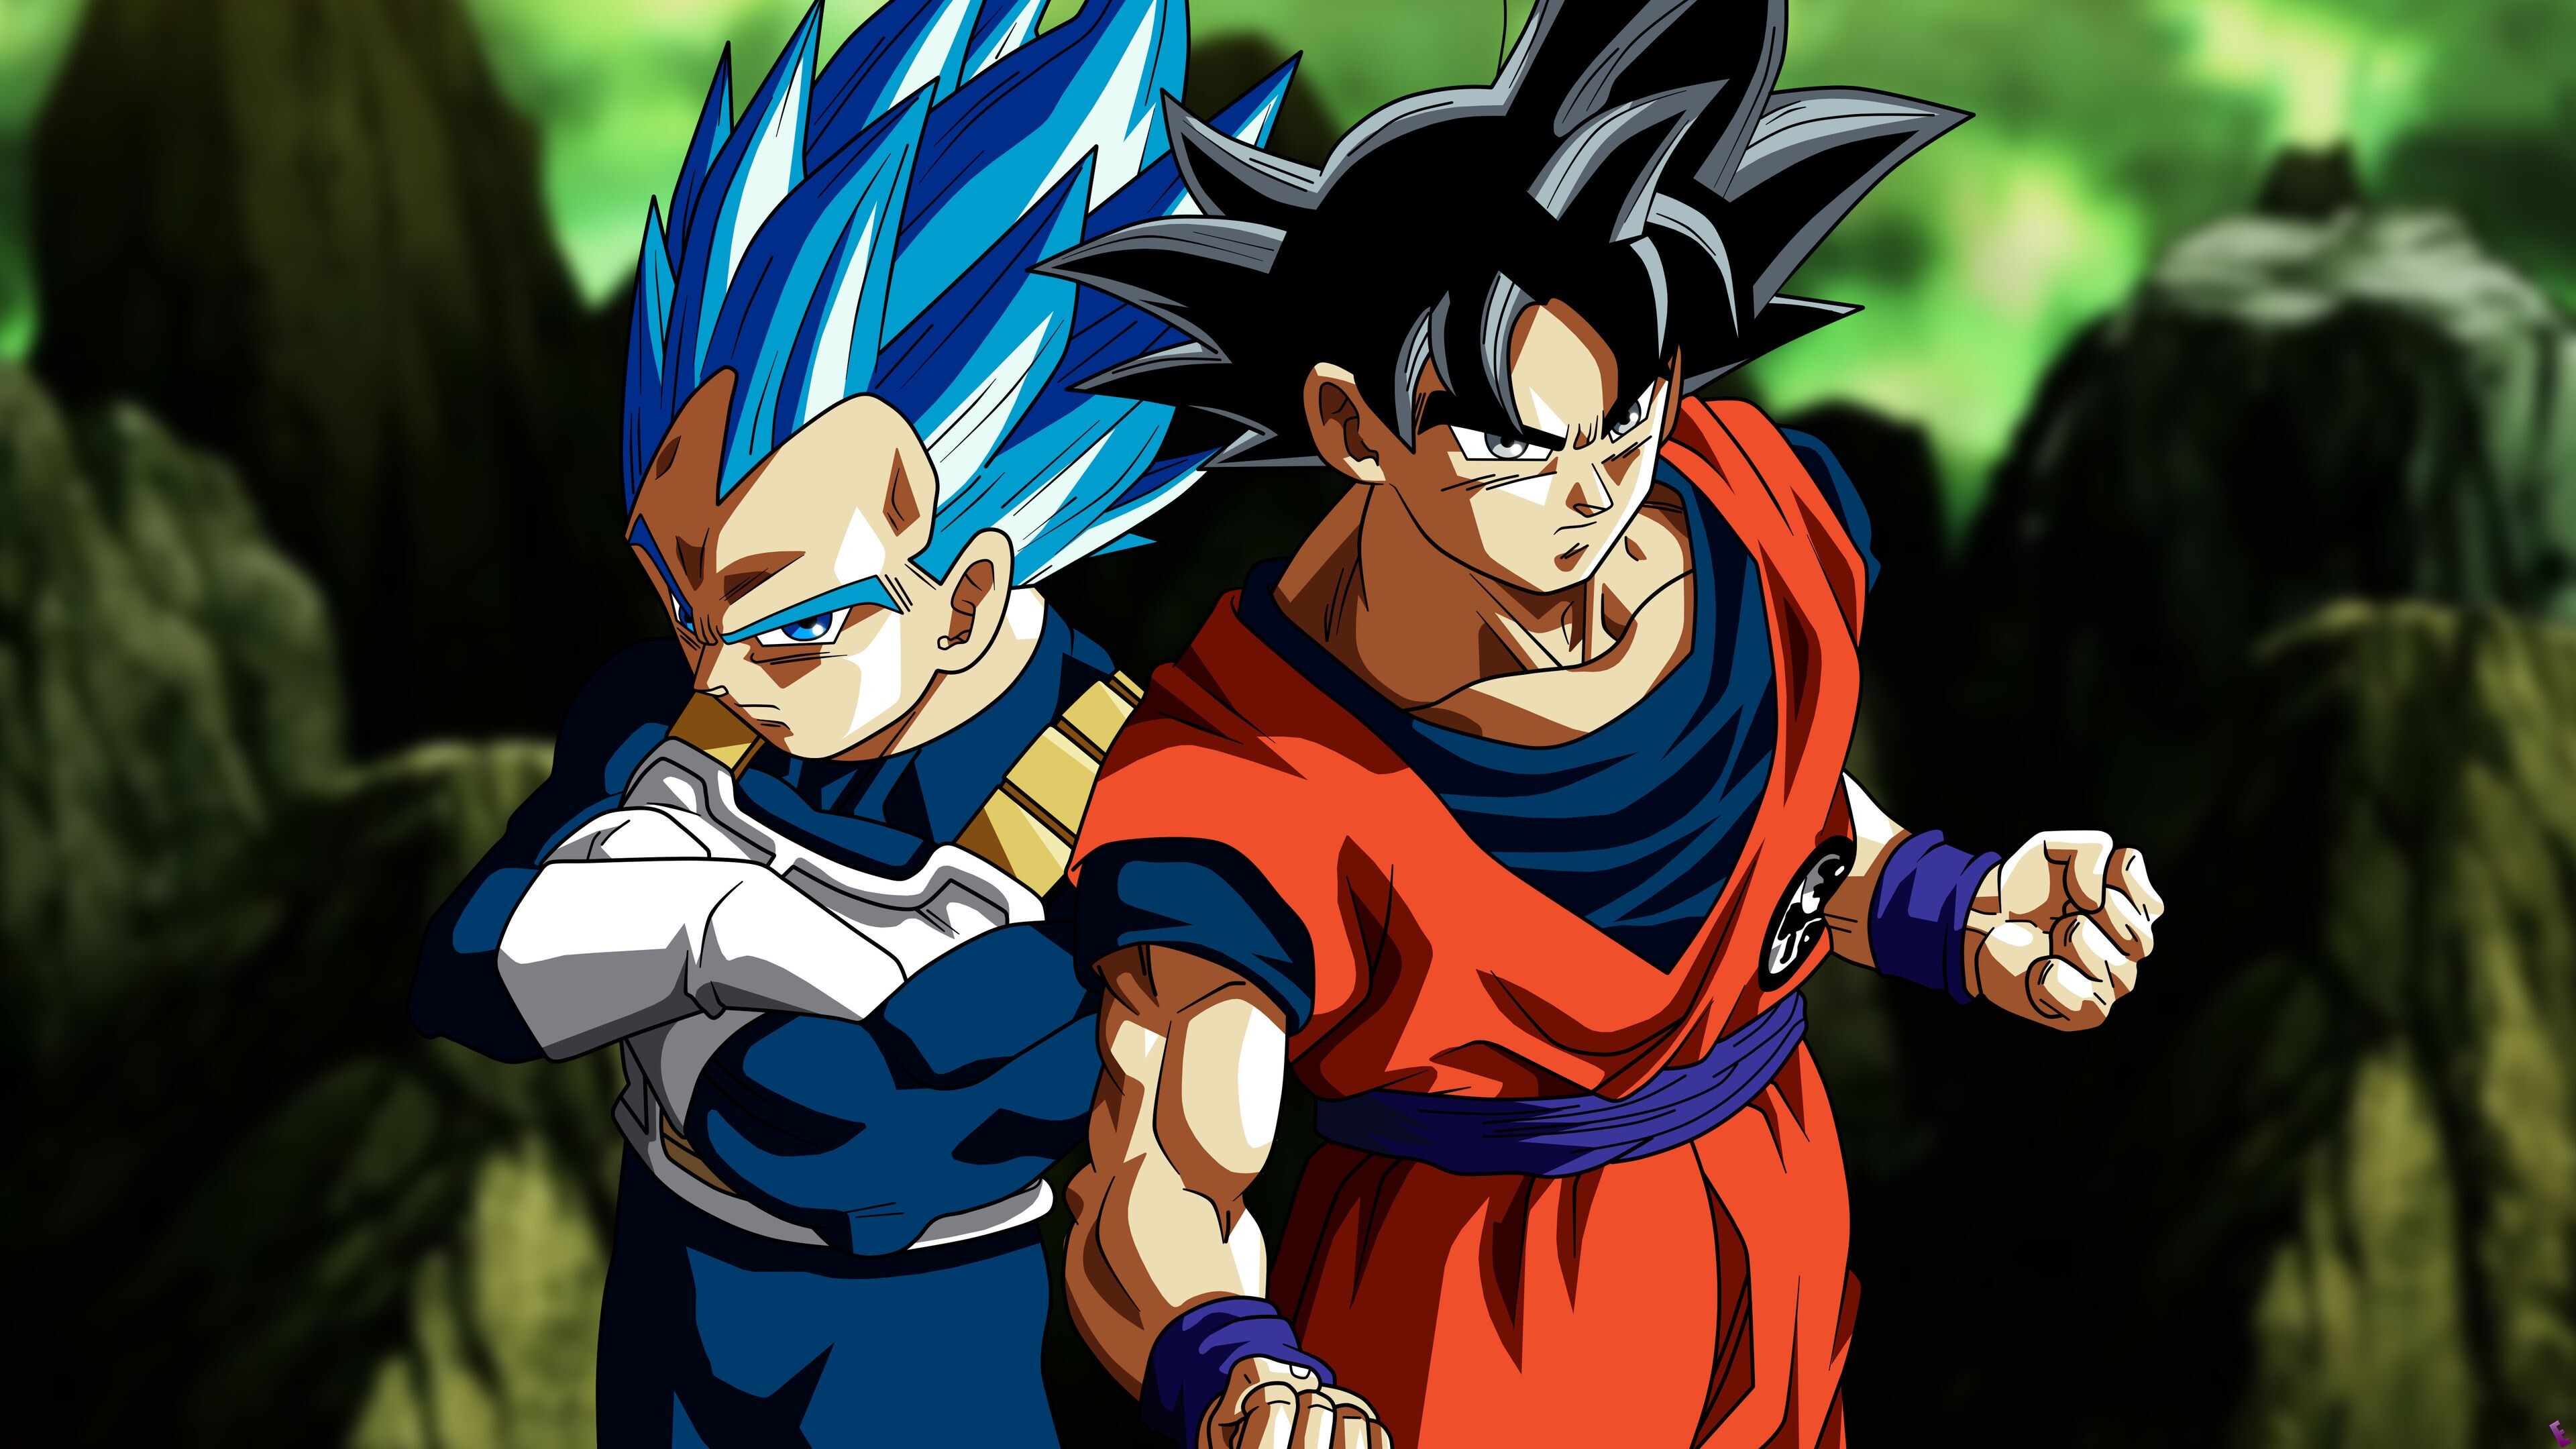 Goku: Vegeta, The prince of the fallen Saiyan race, Anime characters, Dragon Ball. 3840x2160 4K Background.